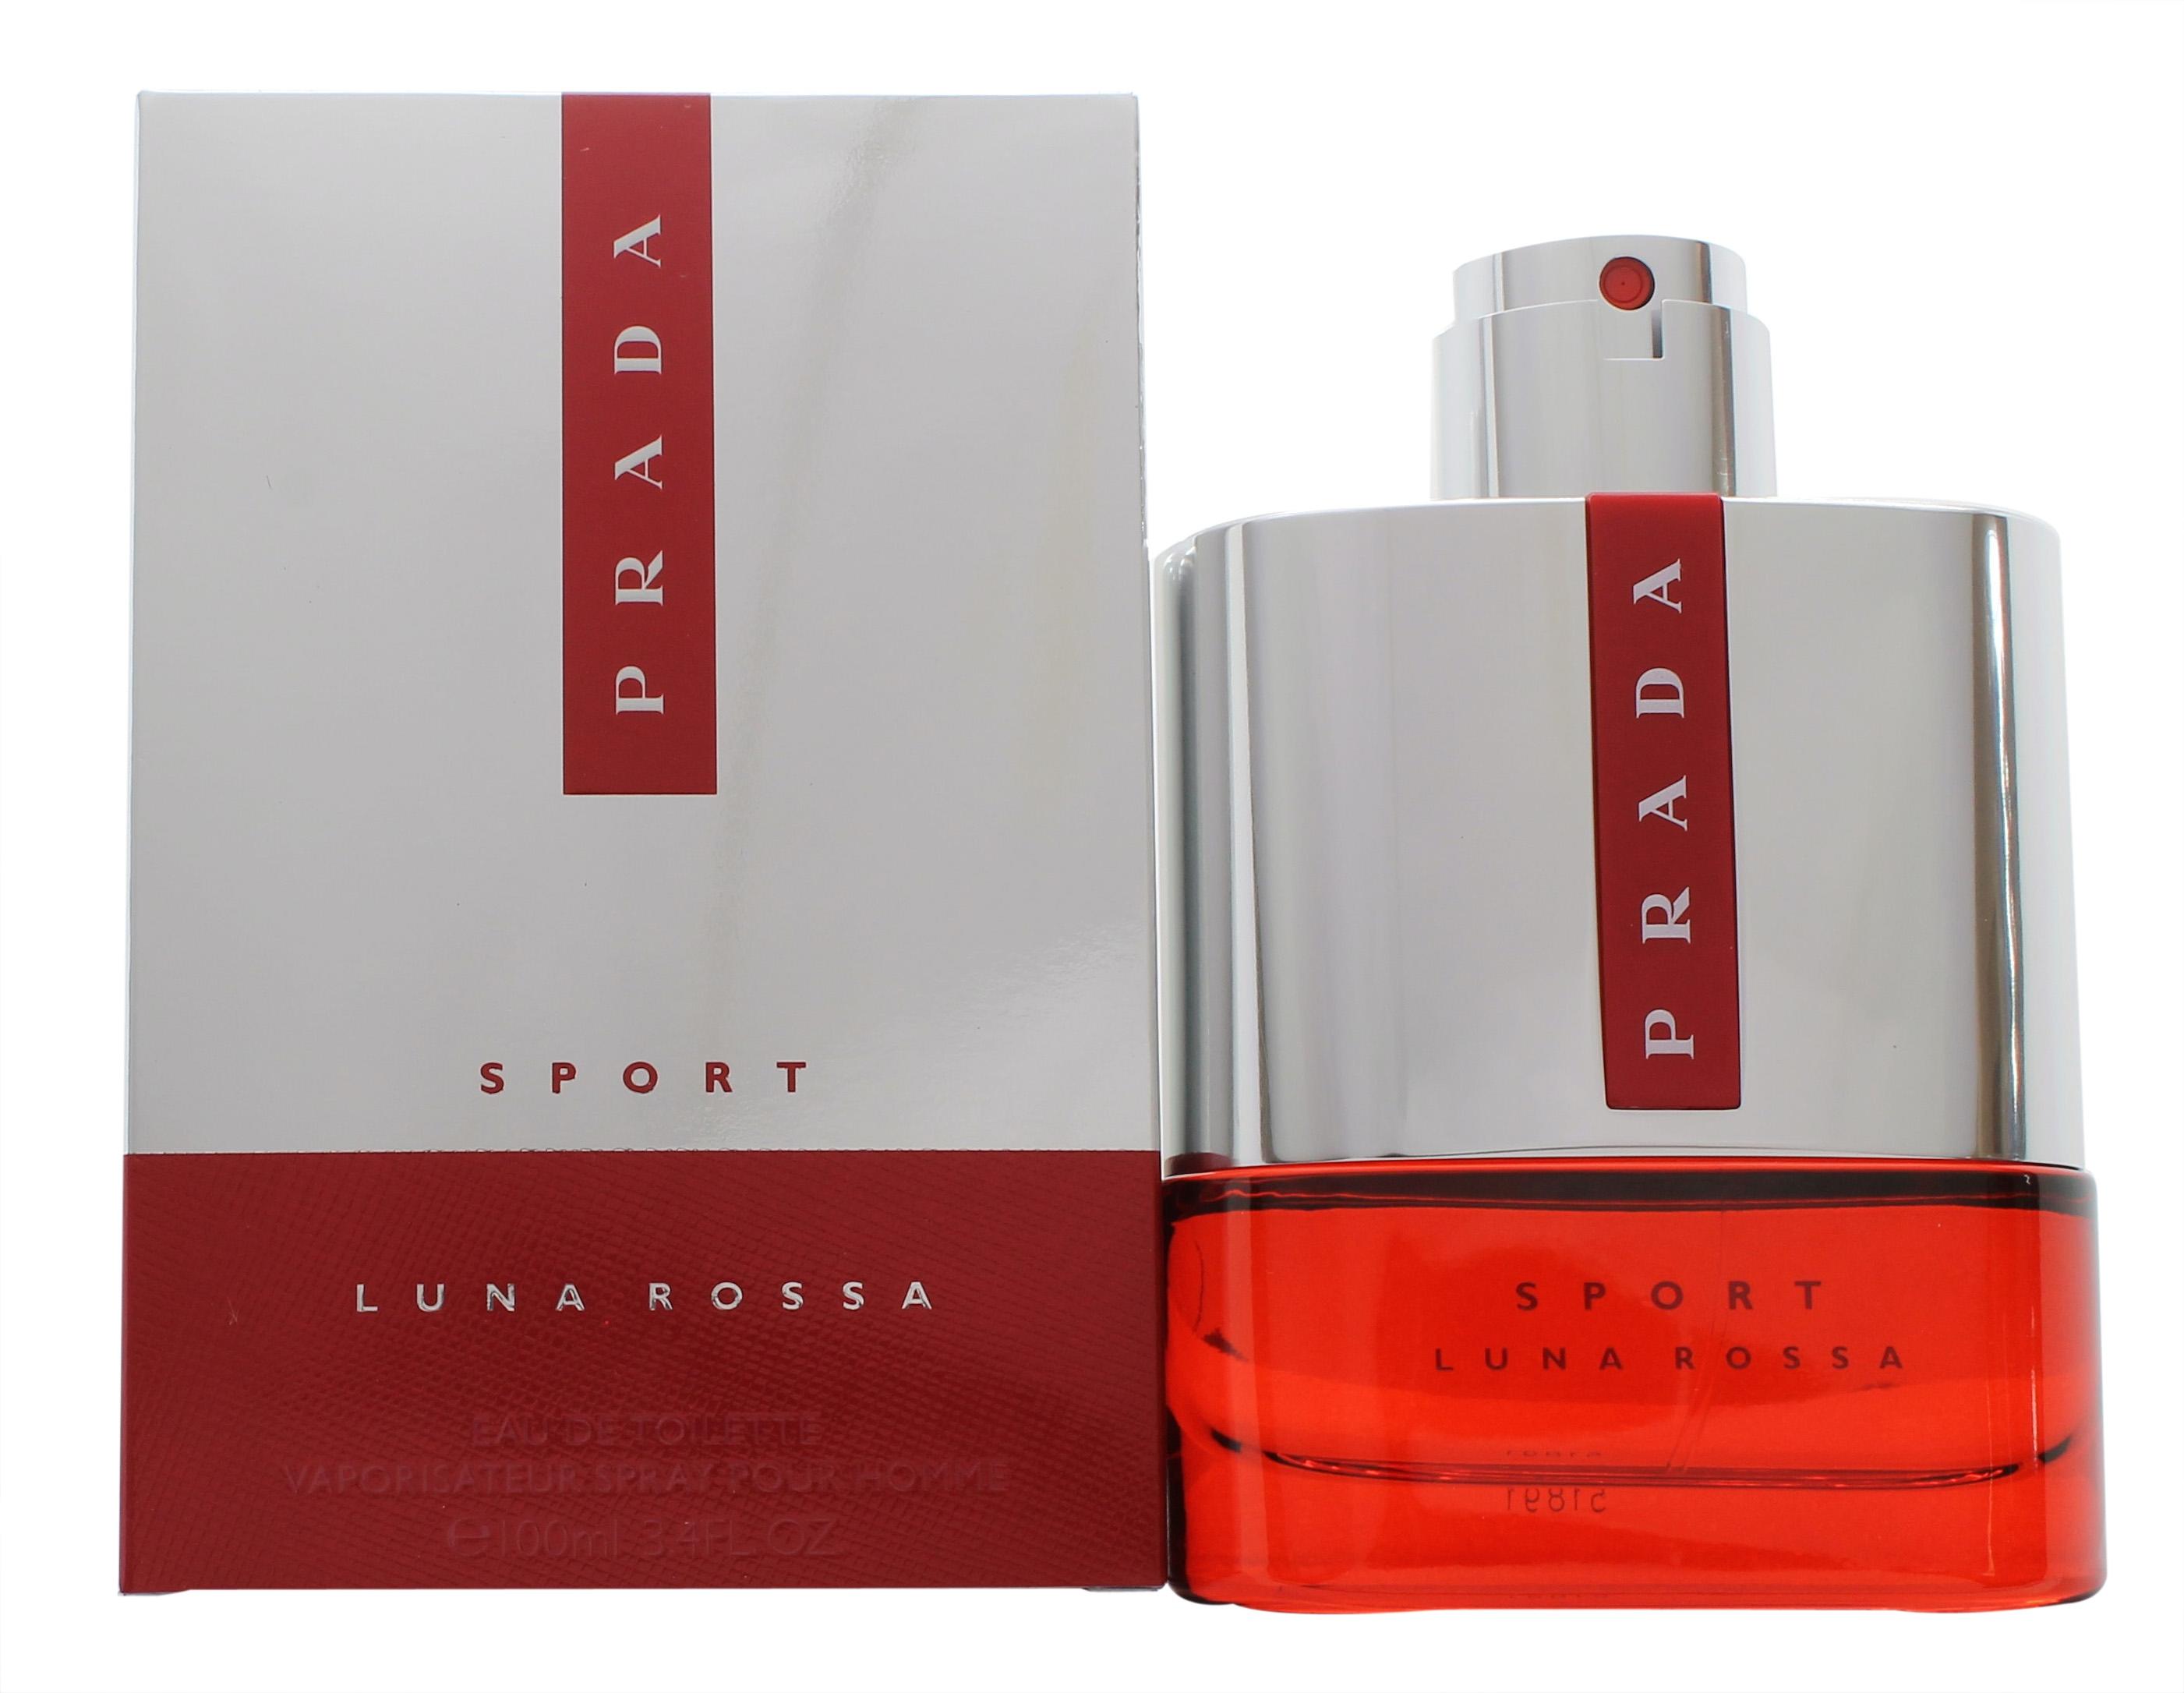 Prada Luna Rossa Sport Eau de Toilette 100ml Spray